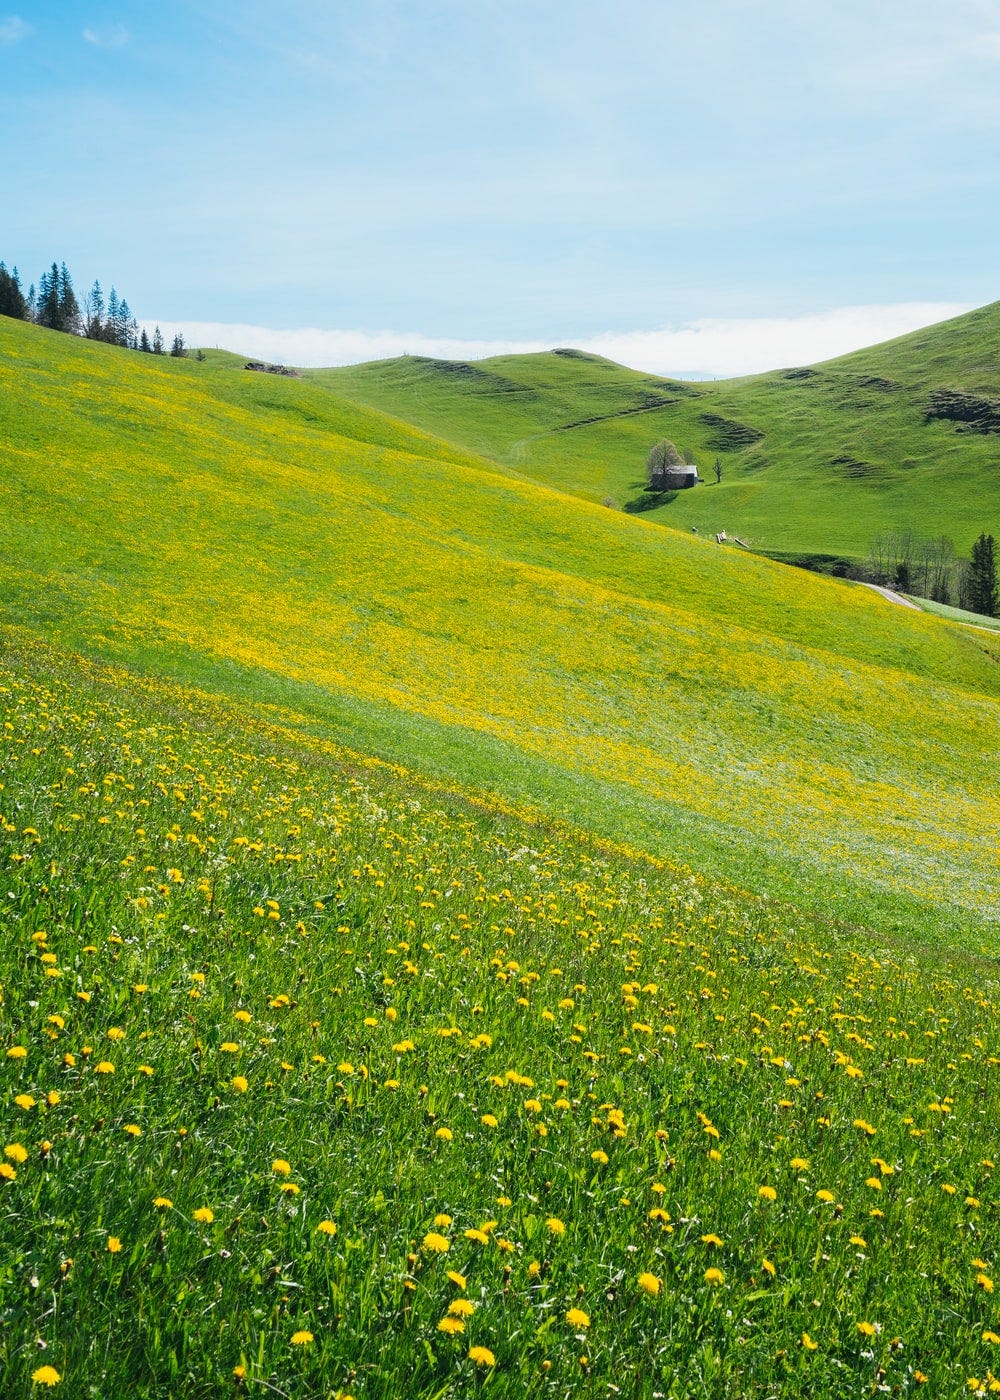 yellow flower field near green grass field during daytime